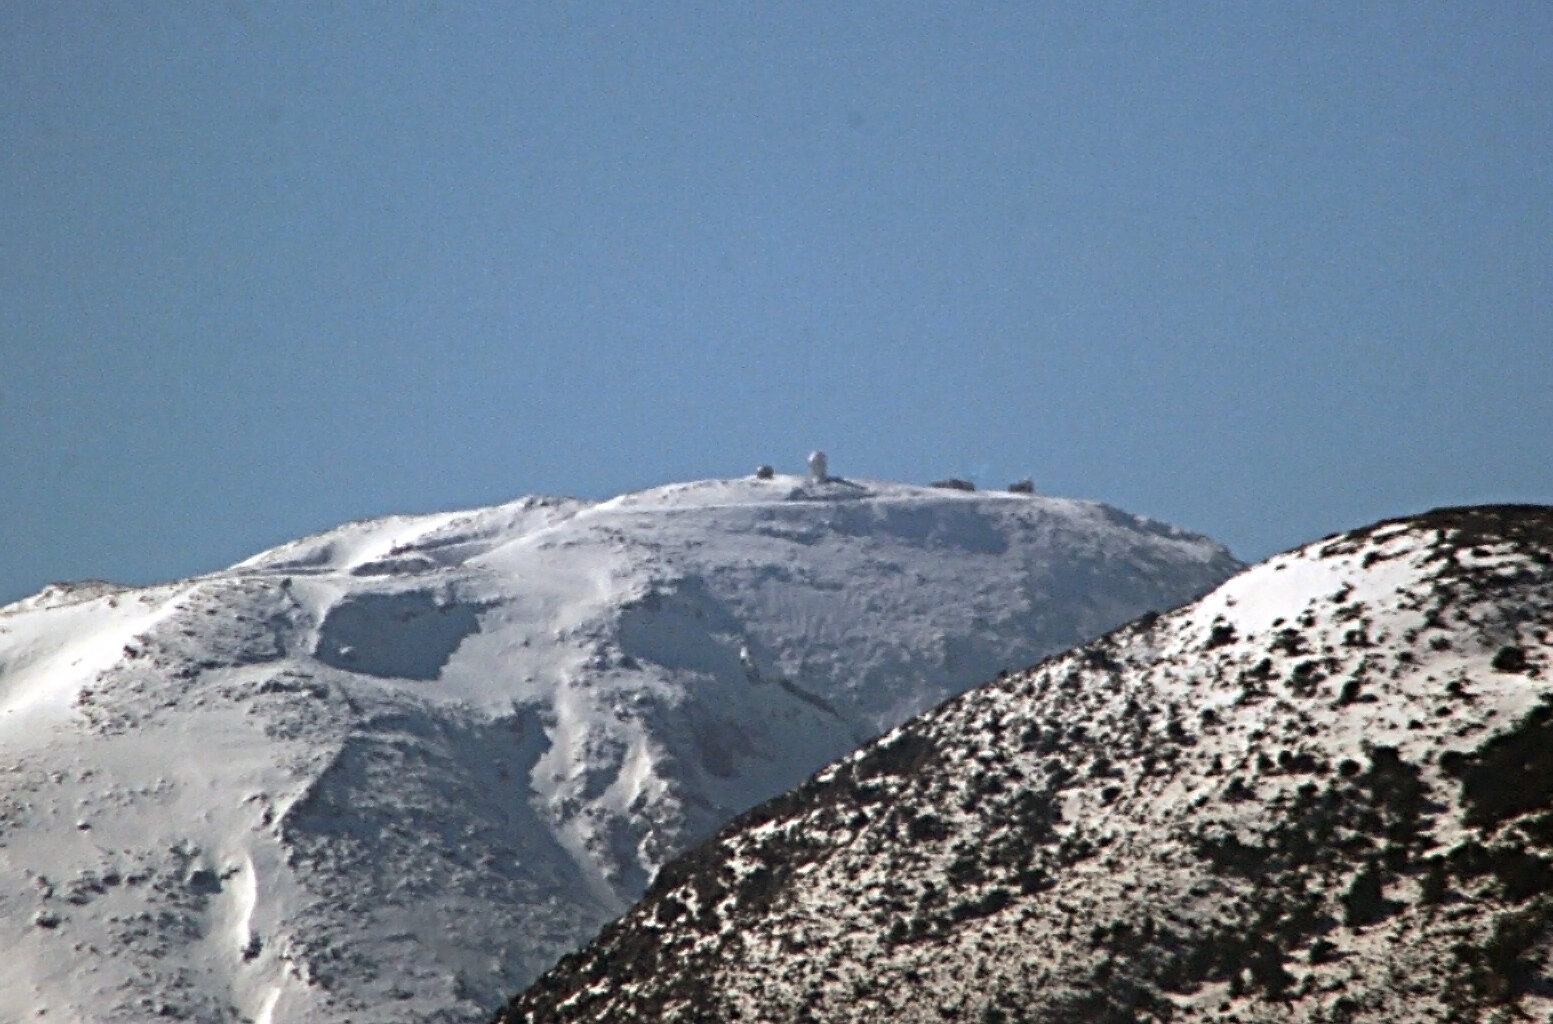 Το αστεροσκοπείο  Σκίνακα στη χιονισμένη κορυφή του Ψηλορείτη.